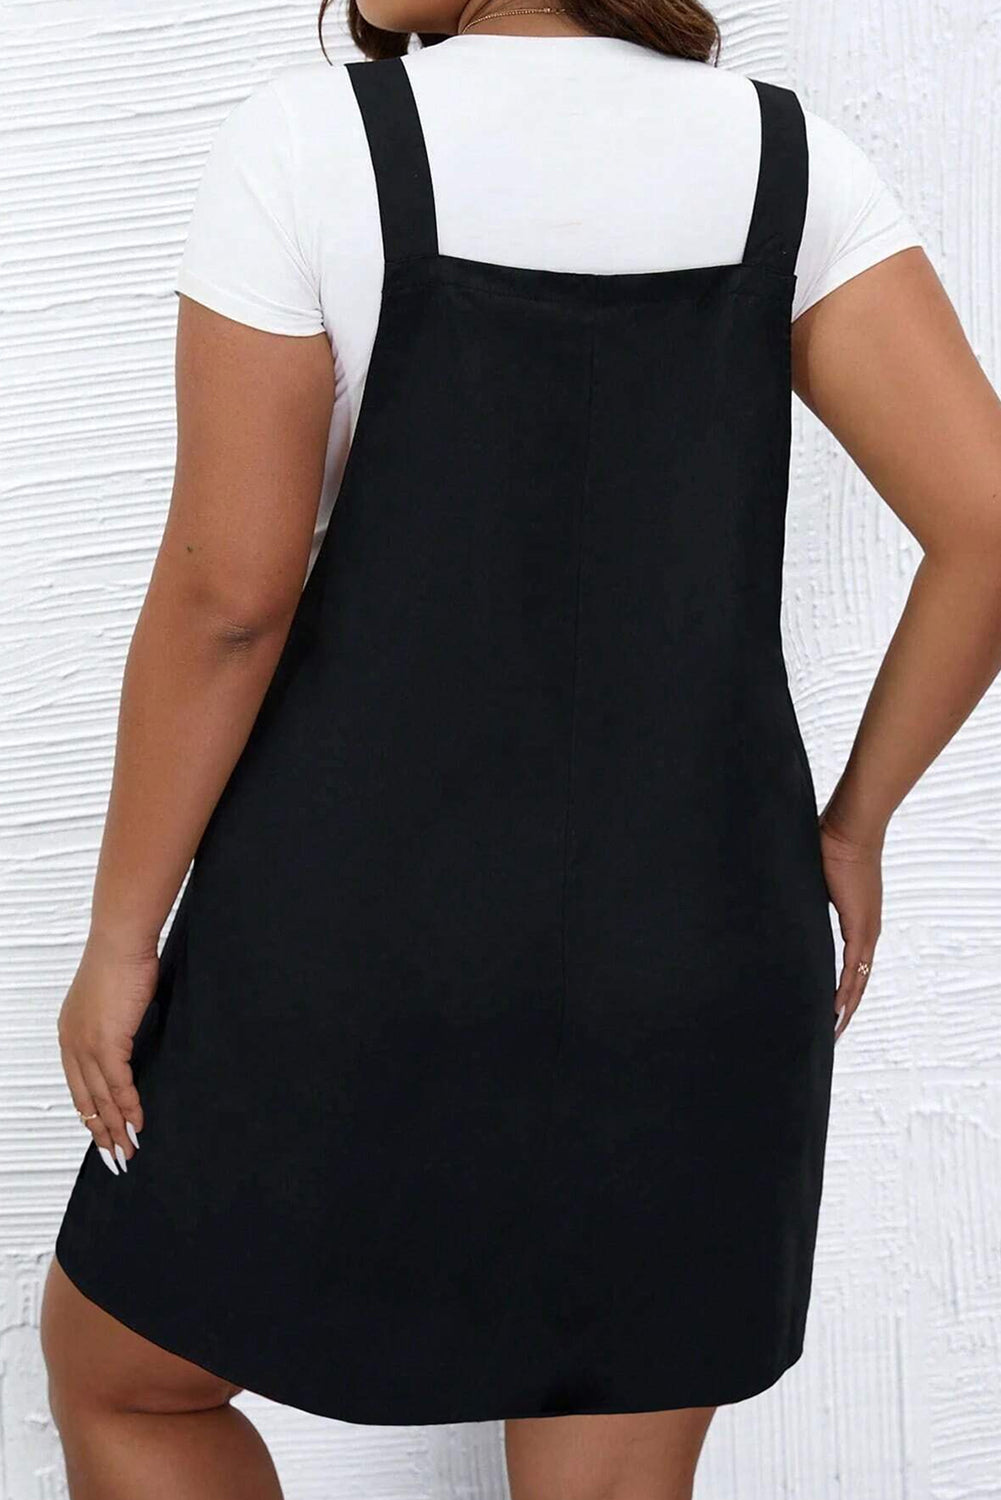 Schwarzes, einfarbiges Overallkleid mit geknöpften Trägern in Übergröße